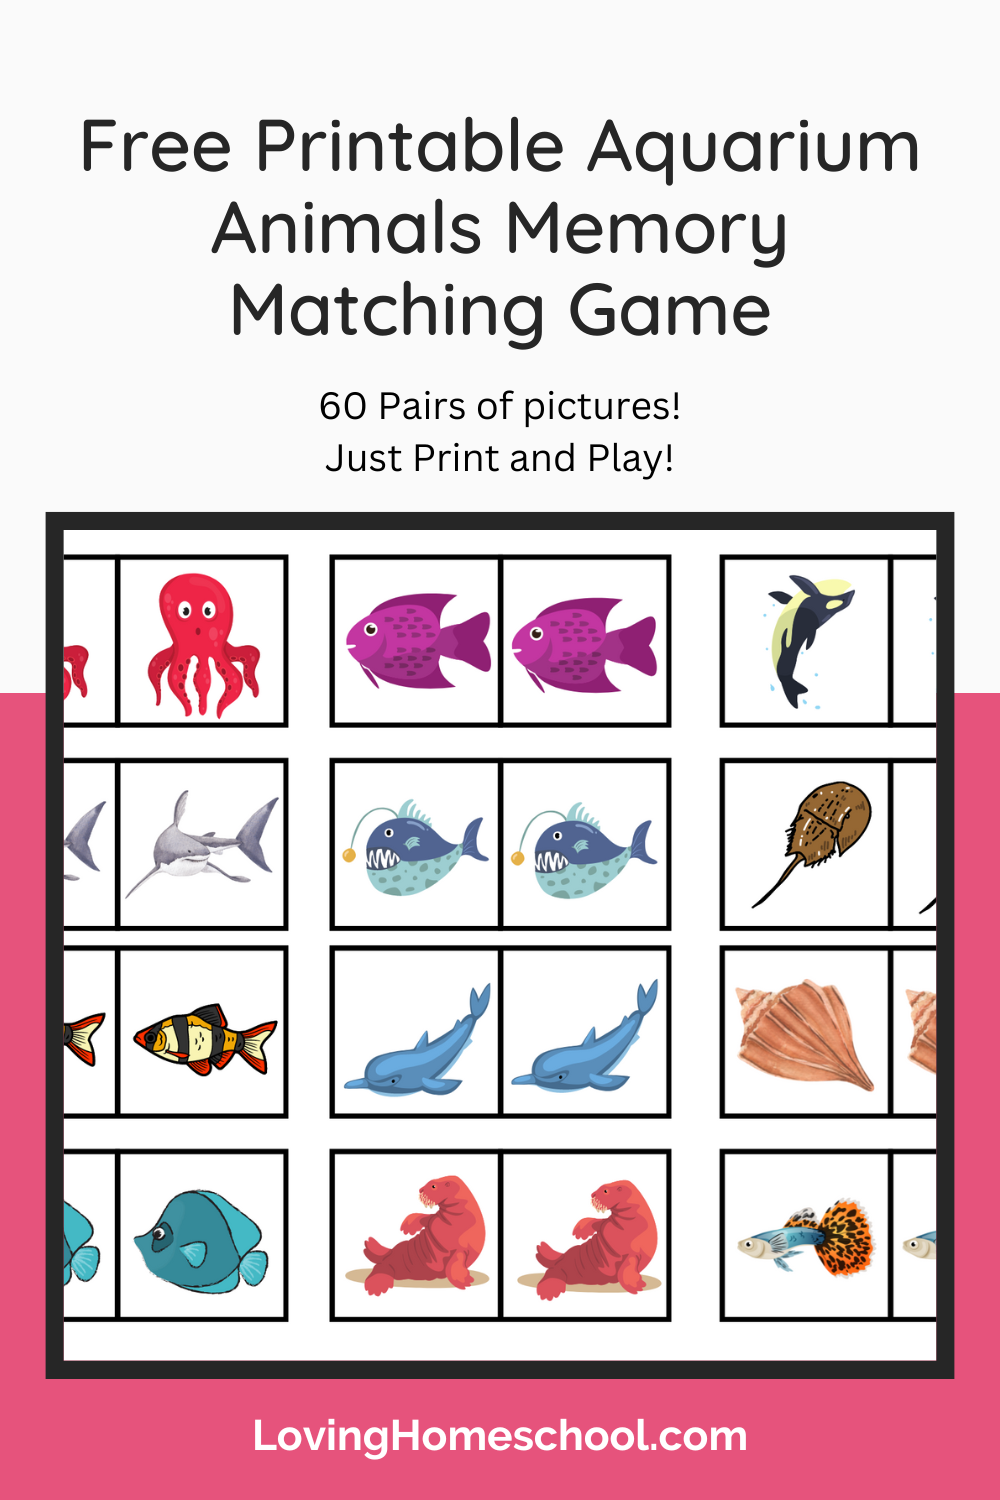 Free Printable Aquarium Animals Memory Matching Game